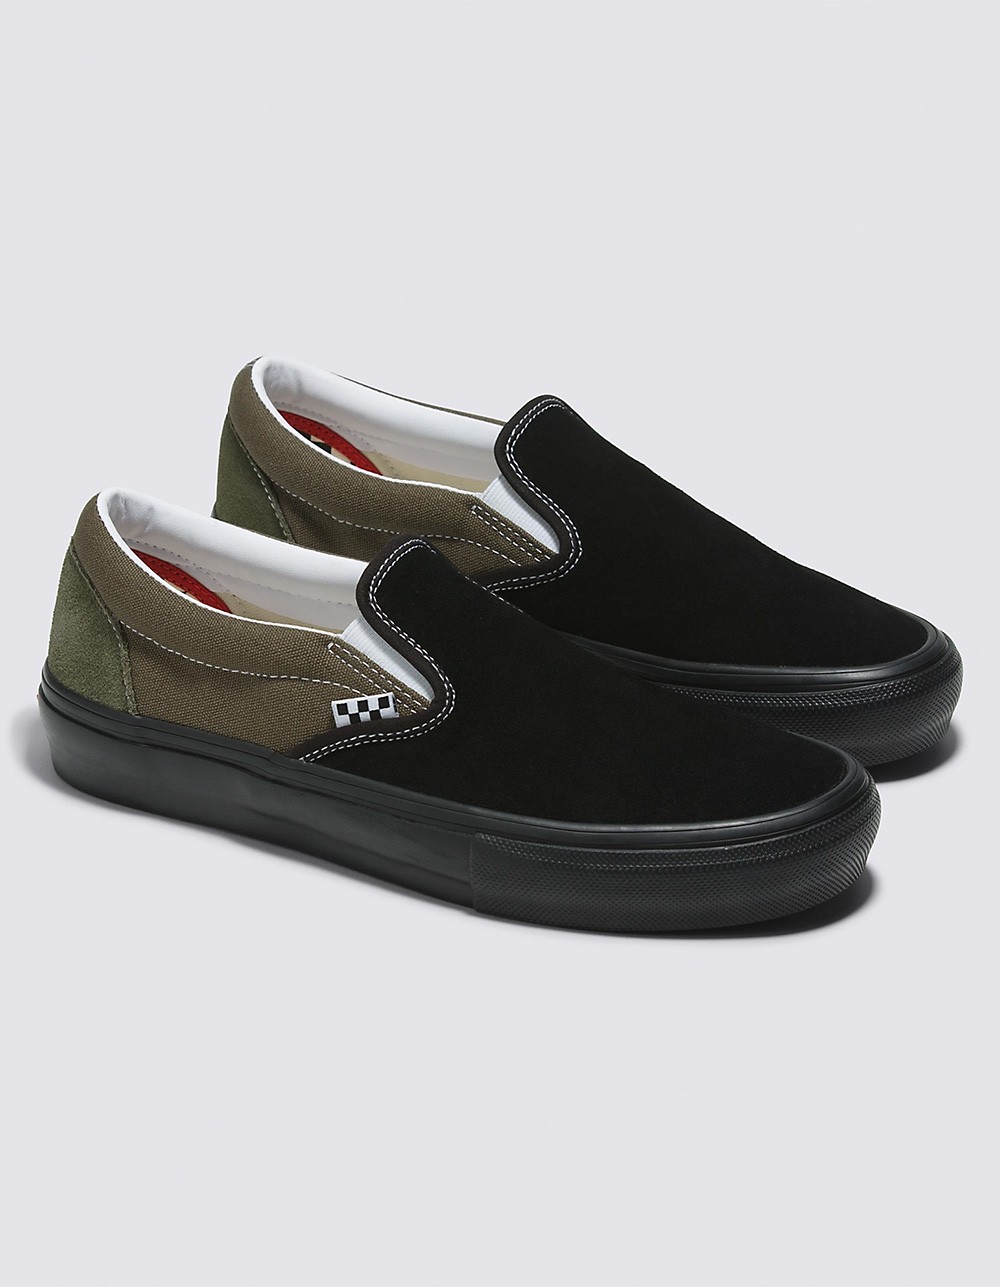 VANS Skate Slip-On Shoes - Black Green | Tillys